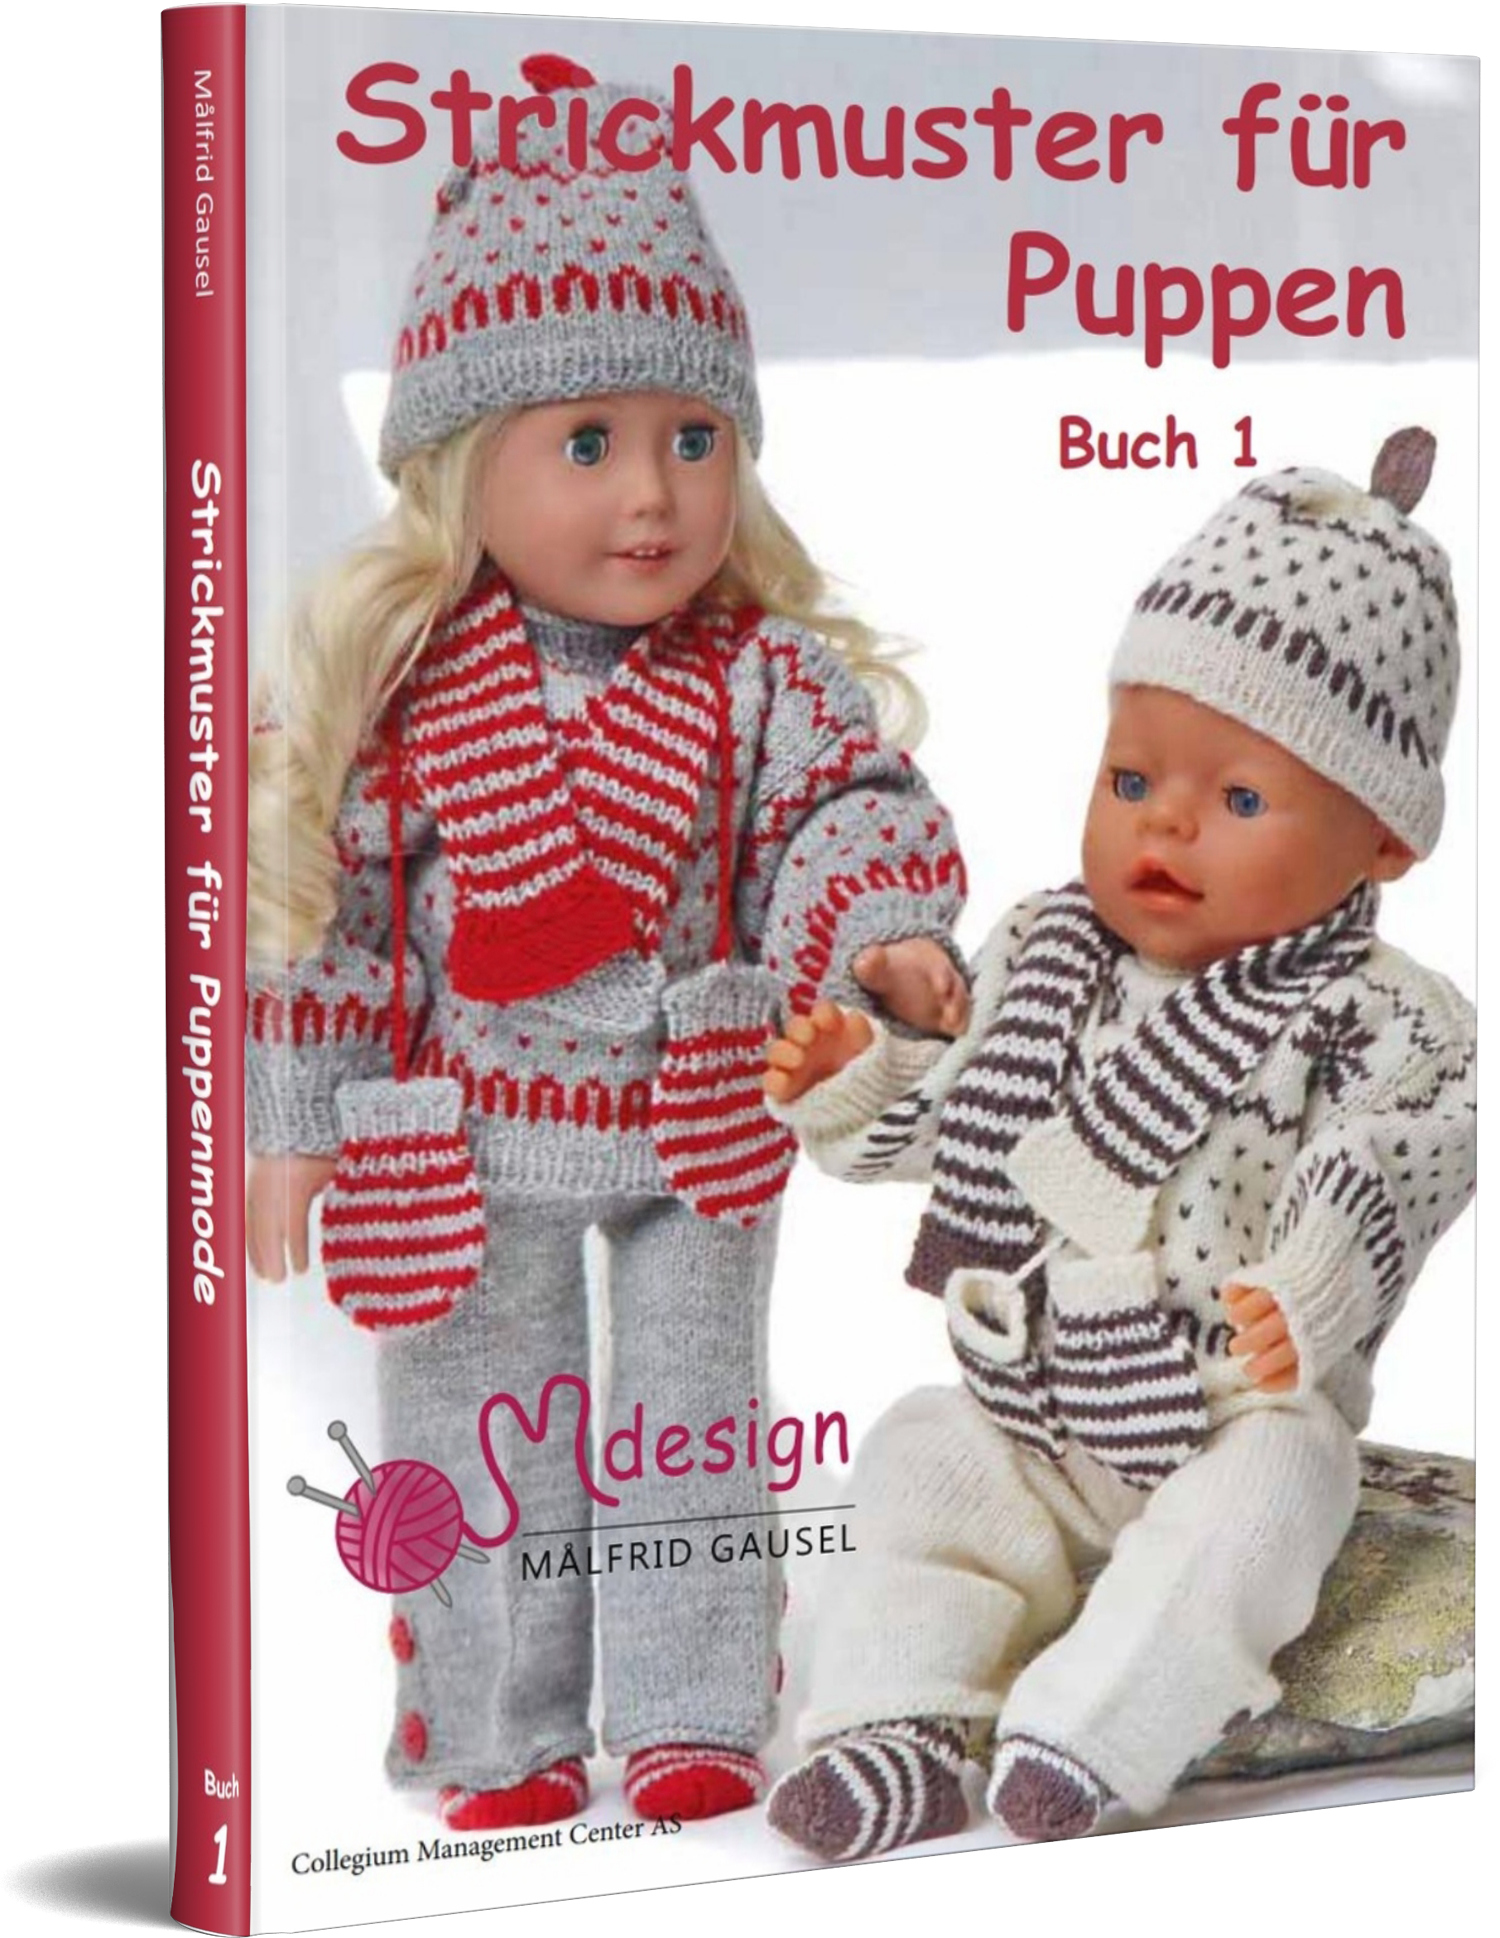 Strickmuster für Puppen Buch 1 